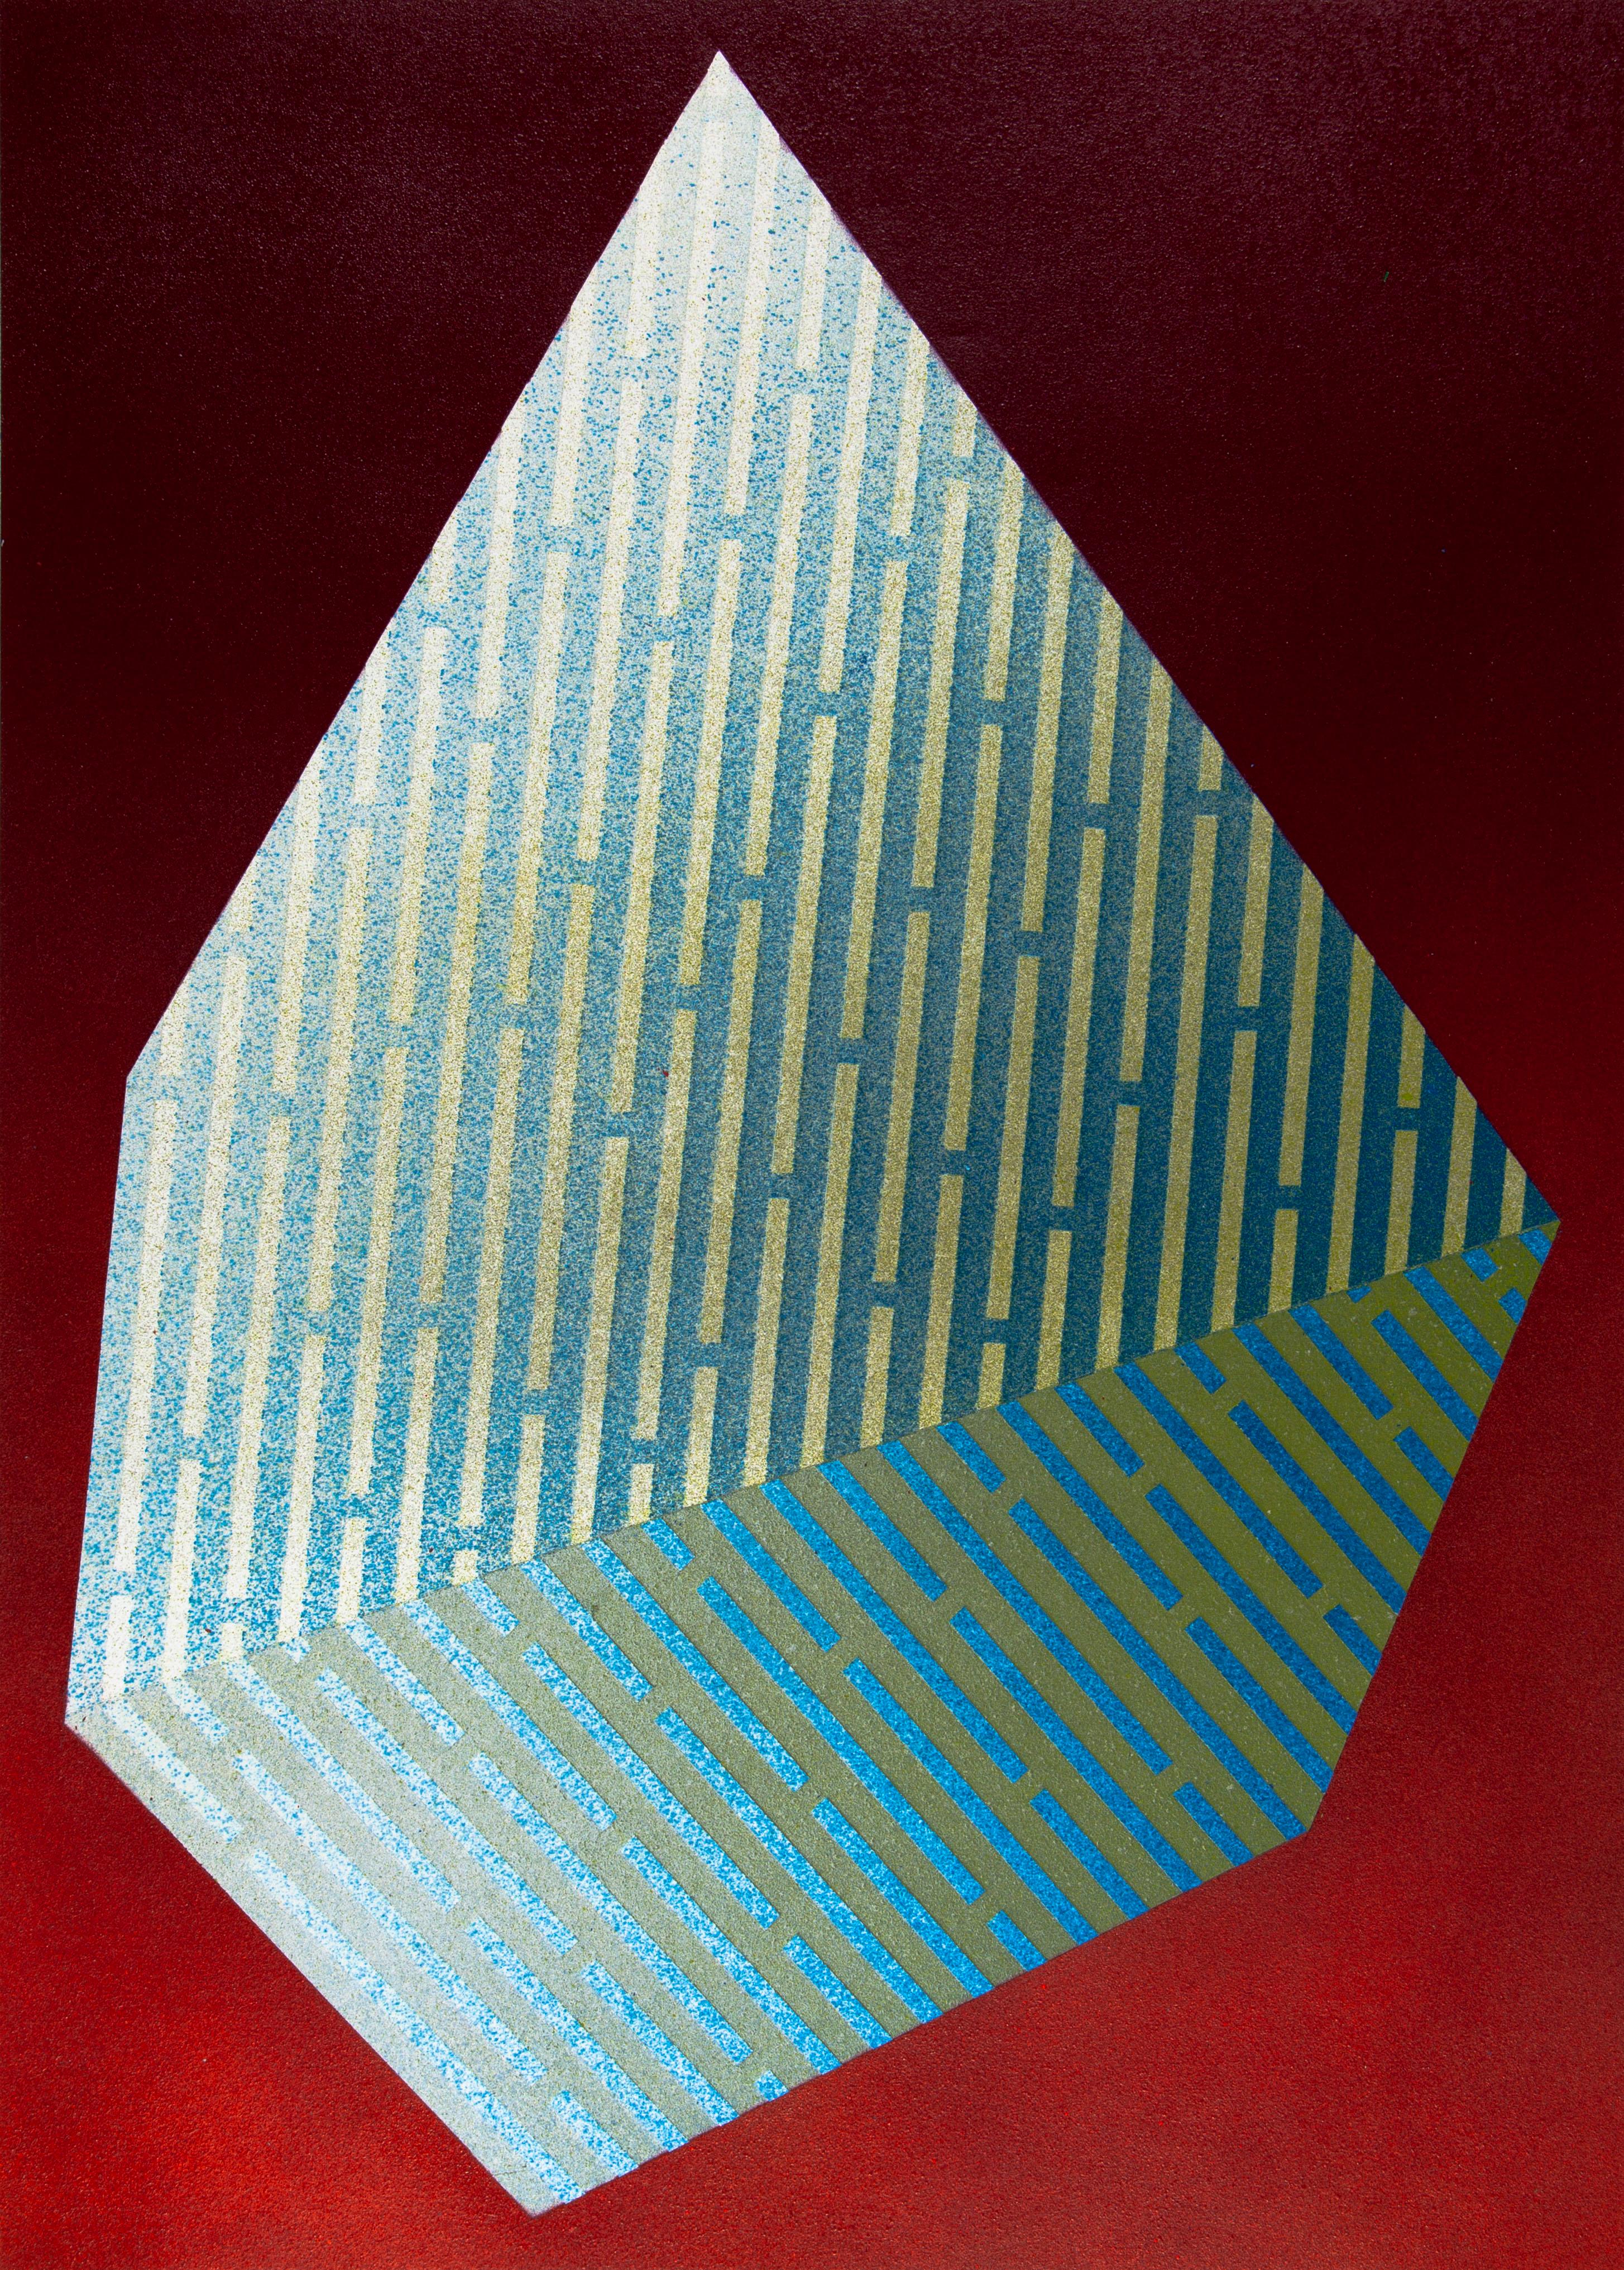 Polygon XIV luminescent : peinture géométrique abstraite ; motifs de lignes rouges et bleues